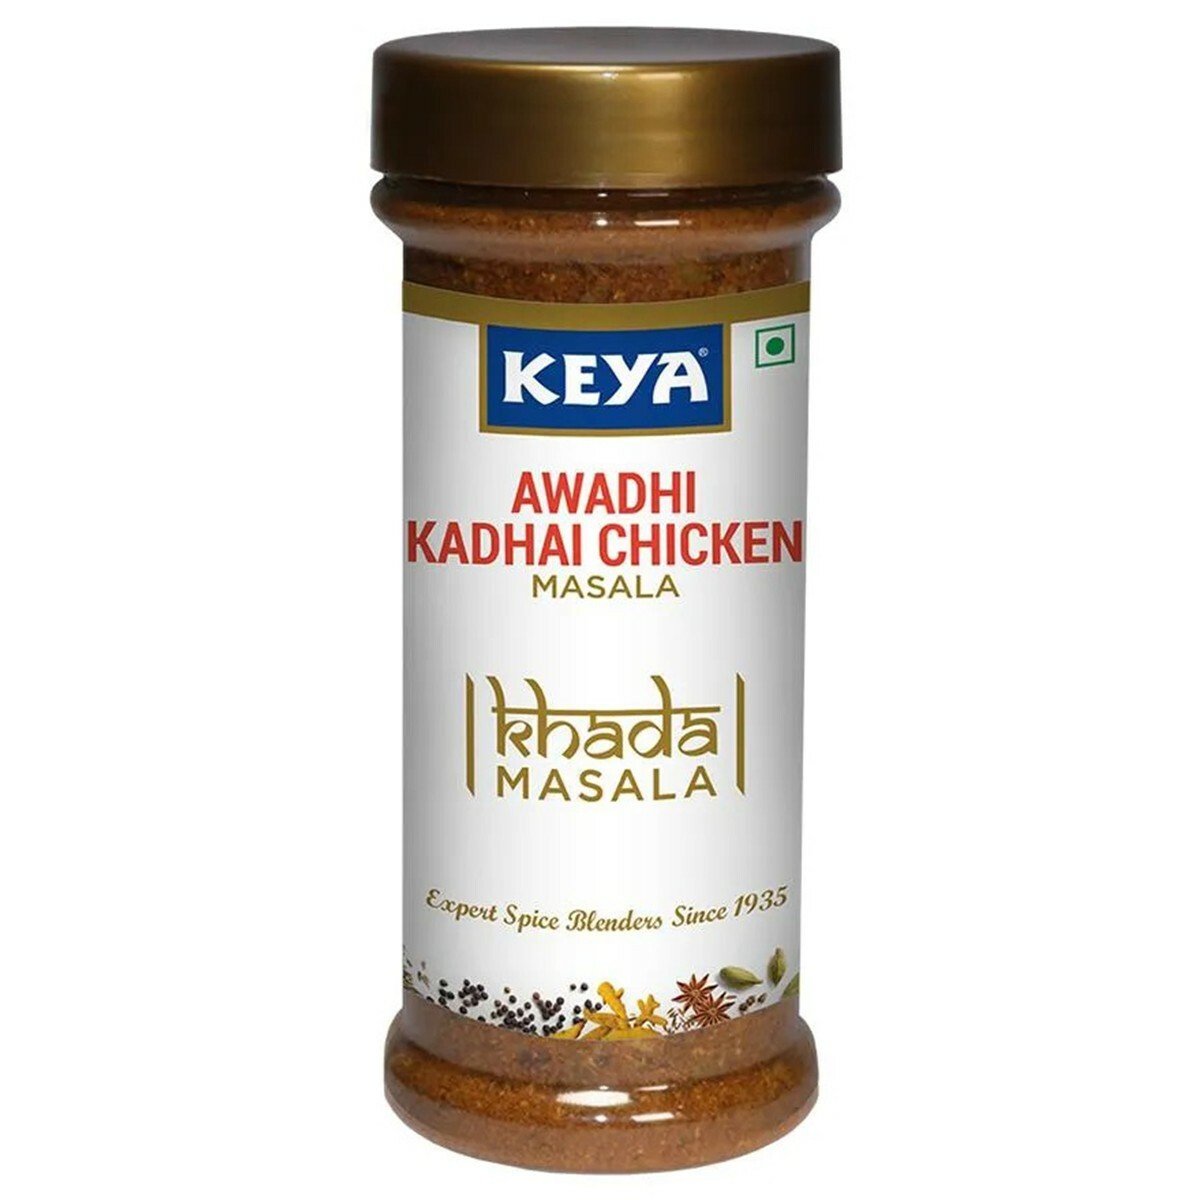 Keya Awadhi Kadhai Chicken Masala 100g